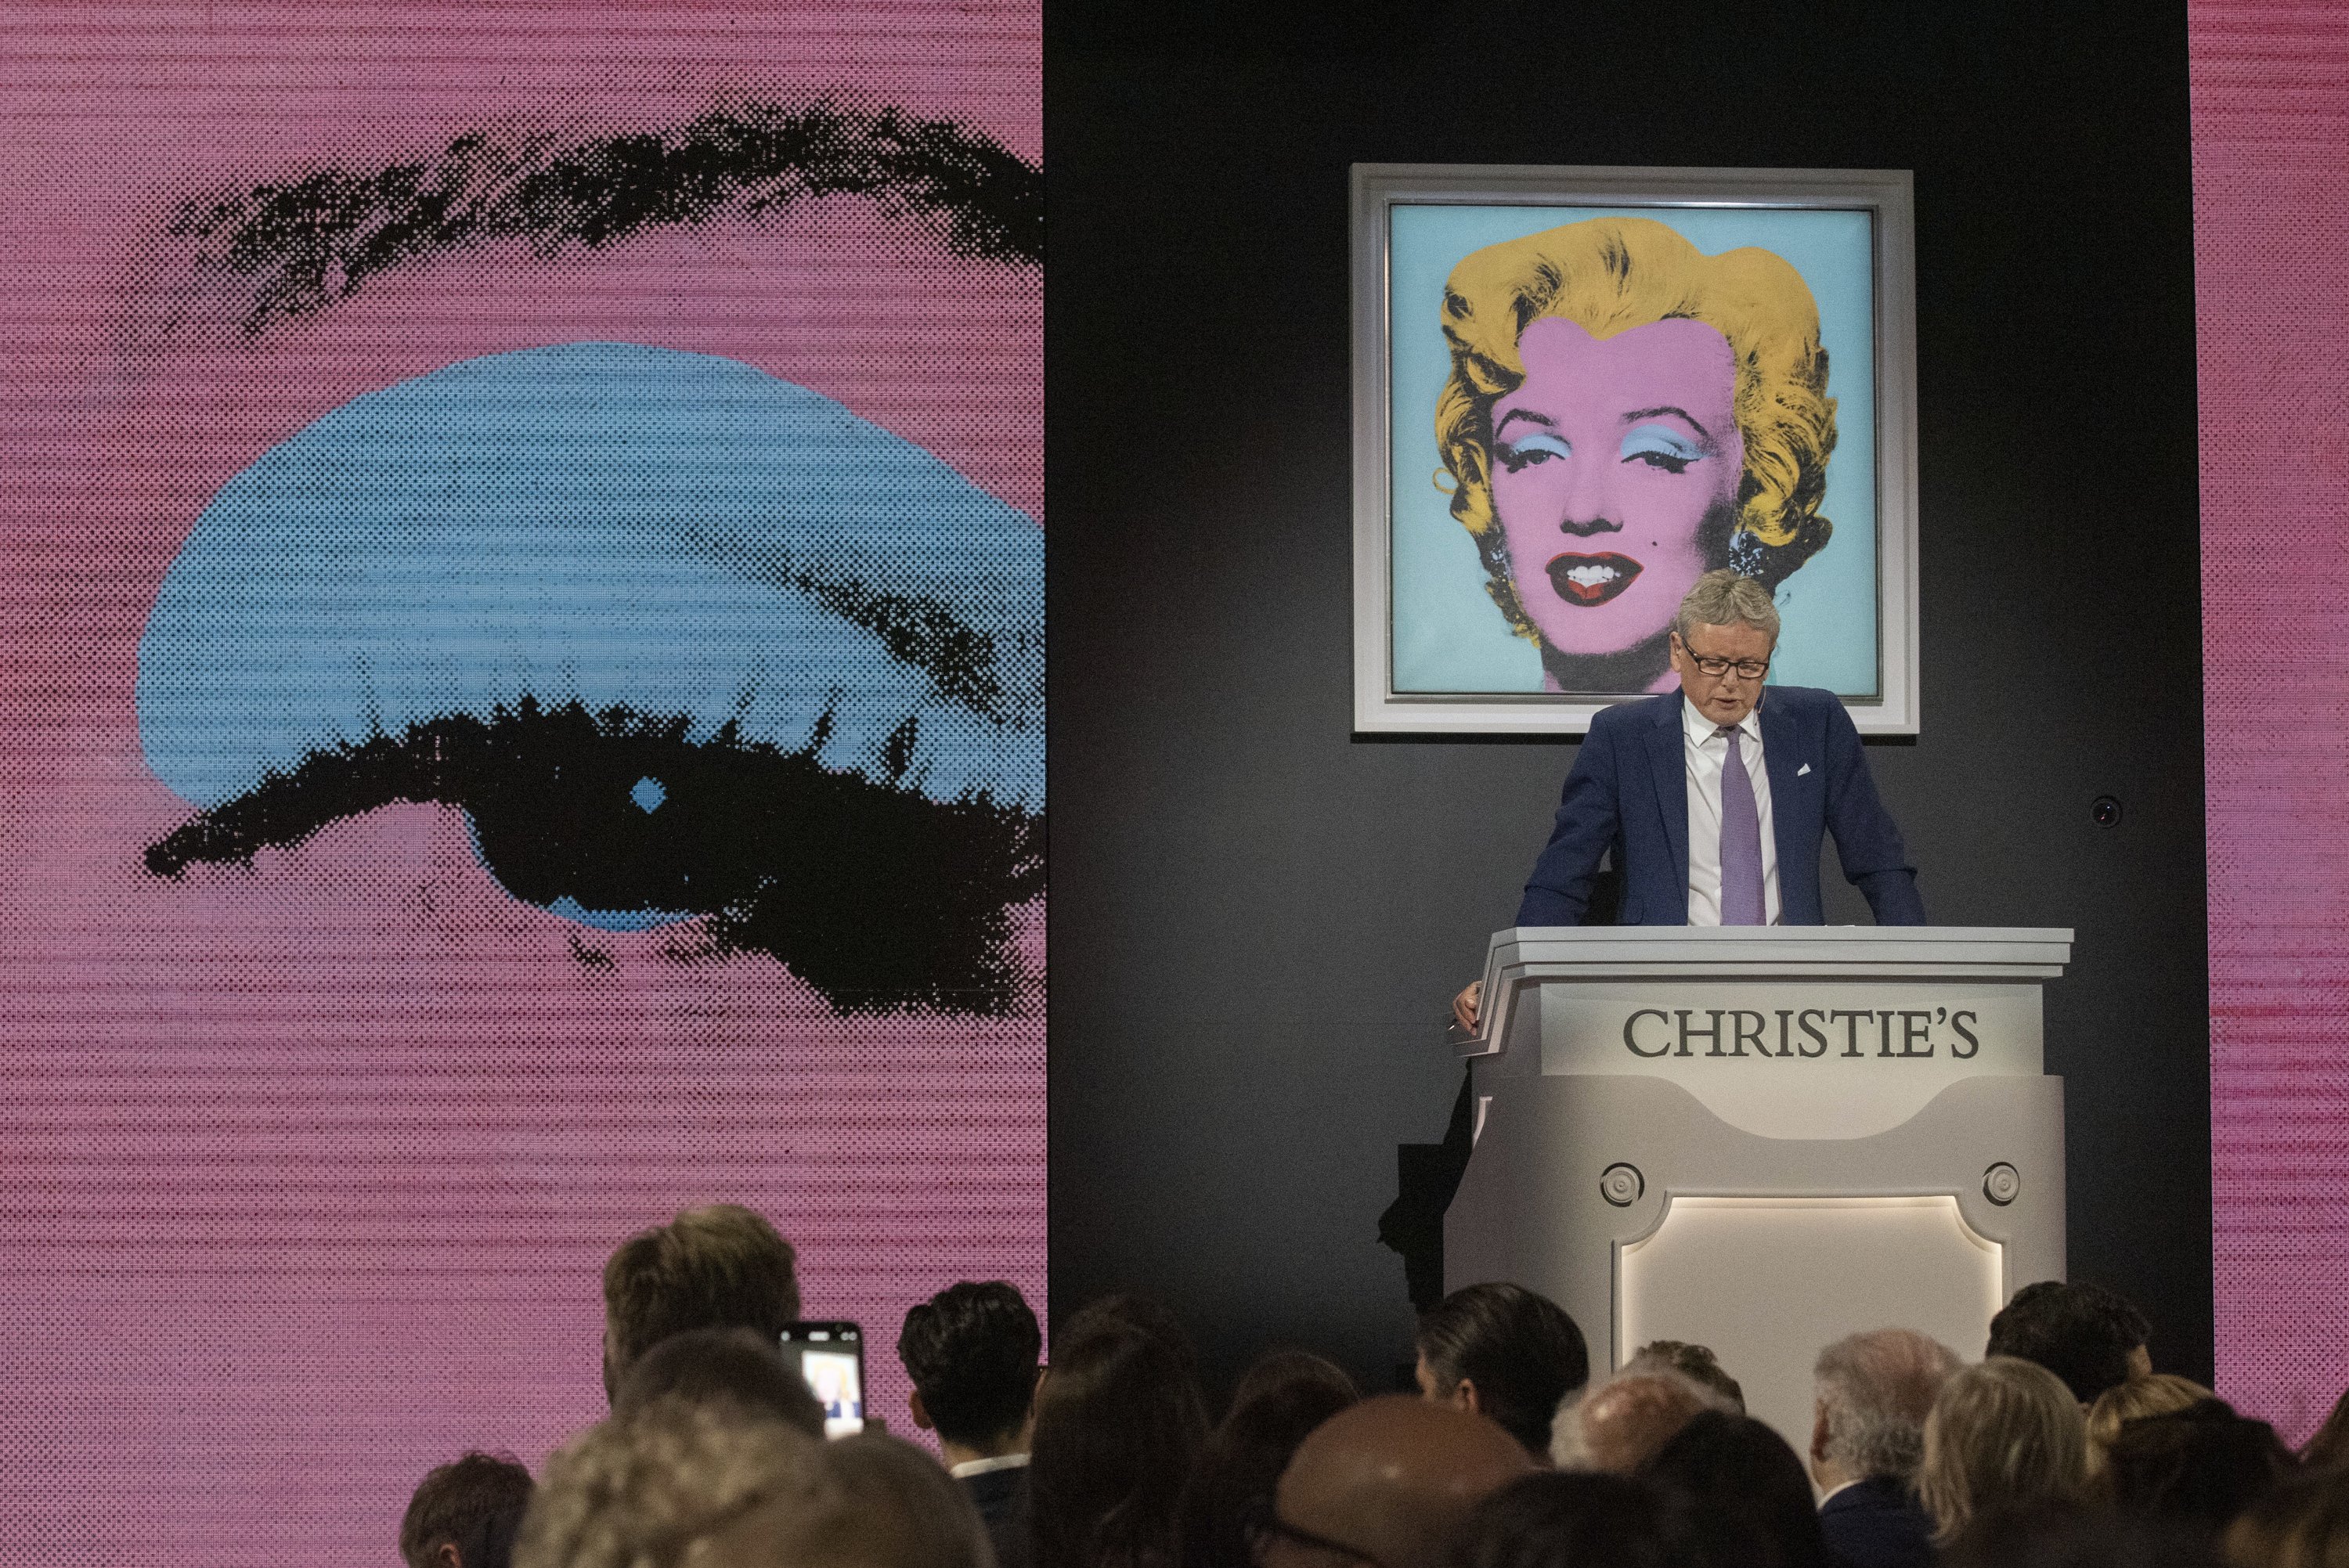 El desorbitat preu pel qual s'ha venut un retrat de Marilyn d'Andy Warhol